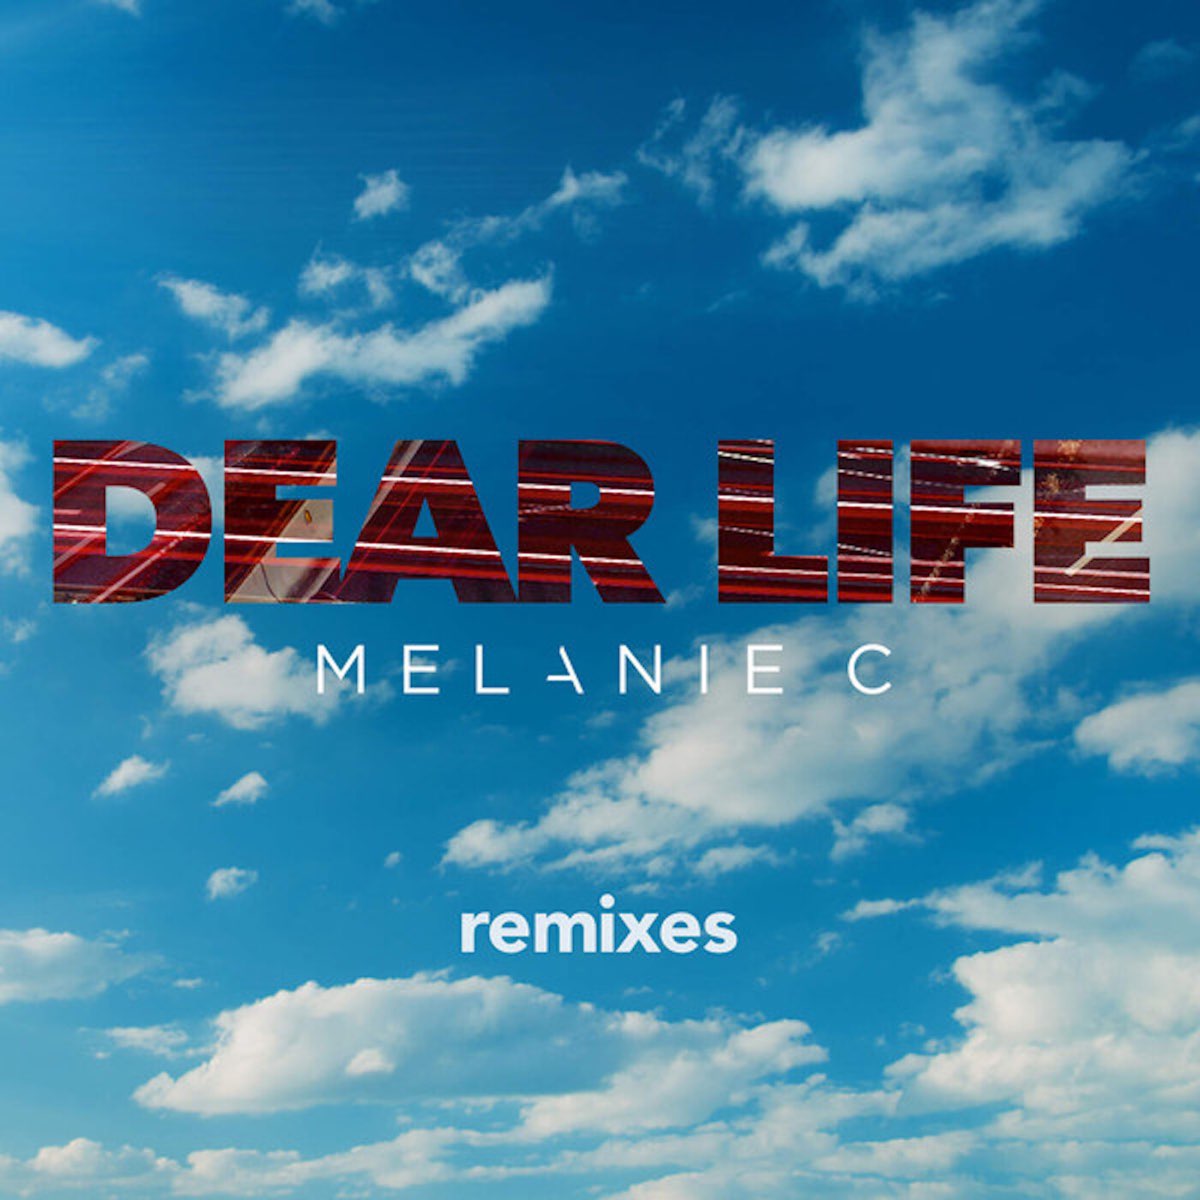 Песня будем жить ремикс. Ремикс на жизнь. Песня on for Dear Life. Sigma Life Remix. T.R.A.C. - Life in Remixes.